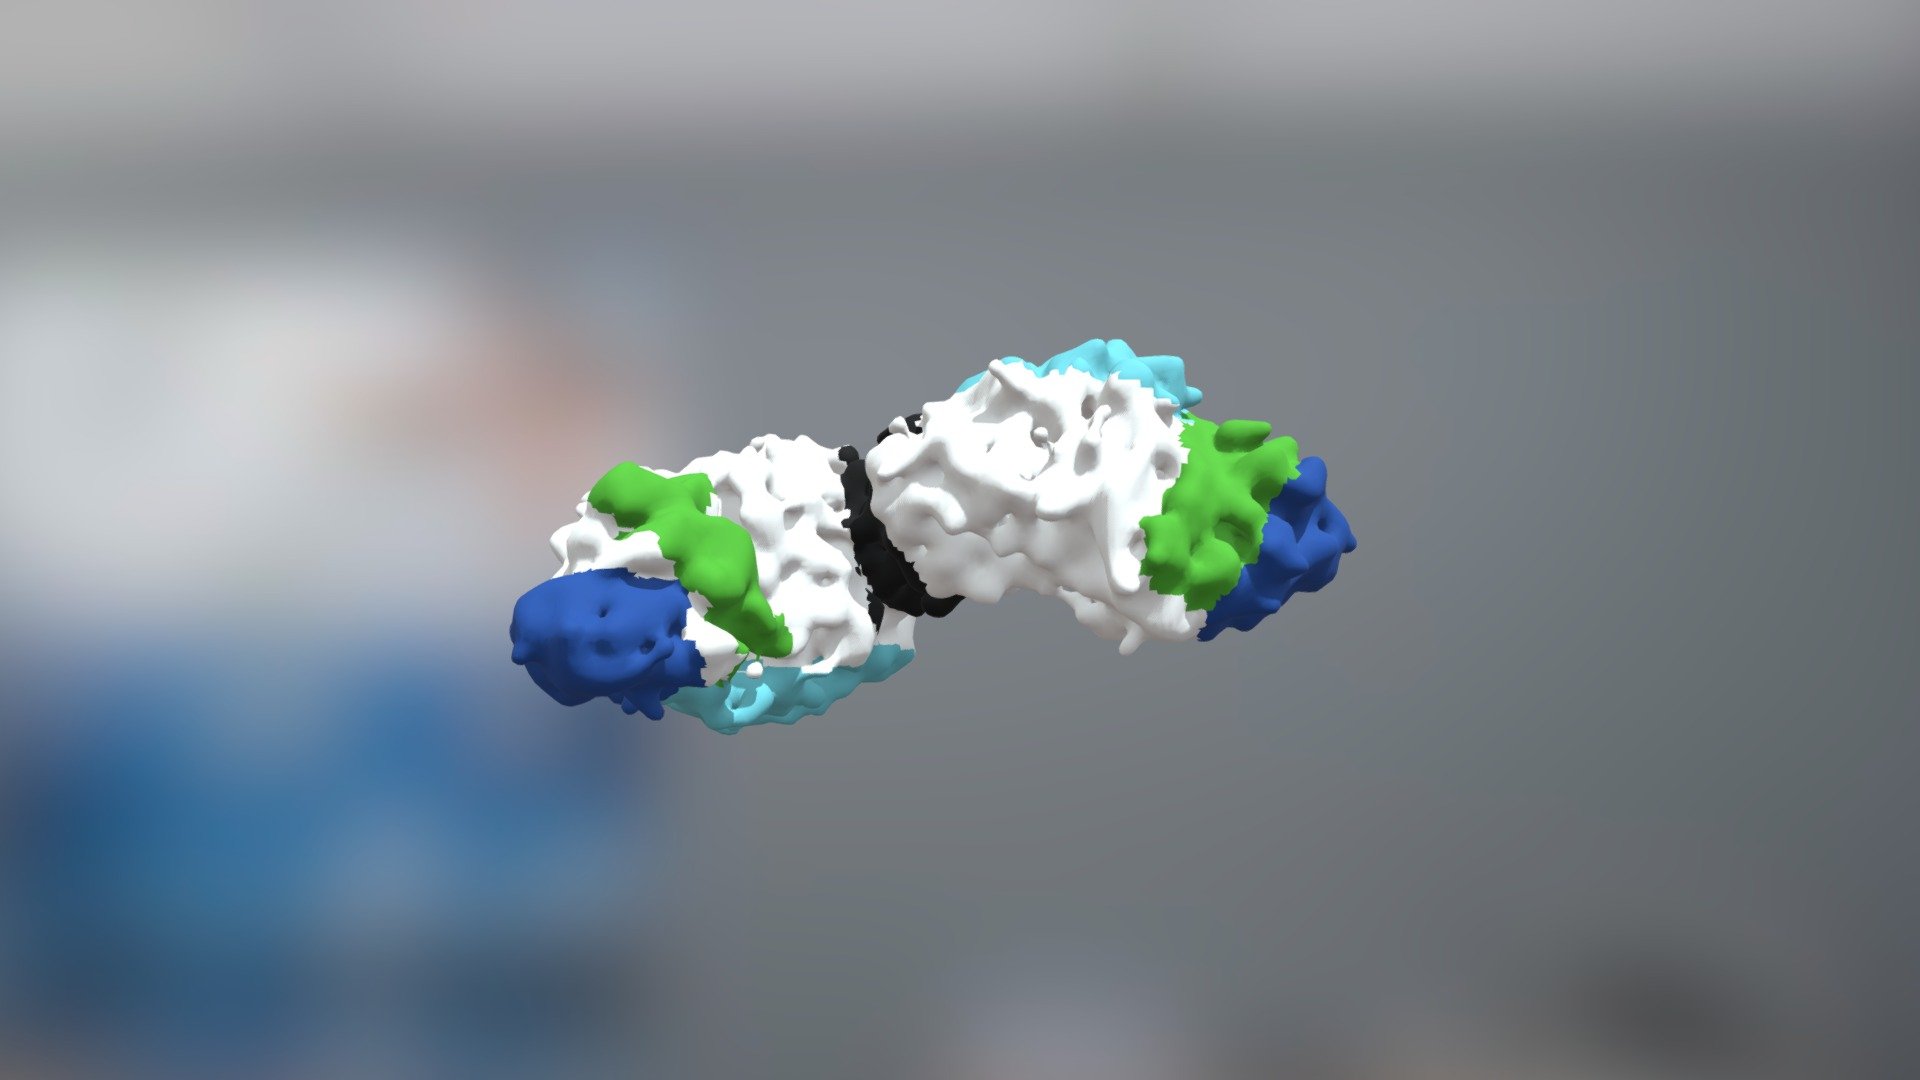 Molecule - 3D model by Ramez ALber (@RamezAlber) 3d model